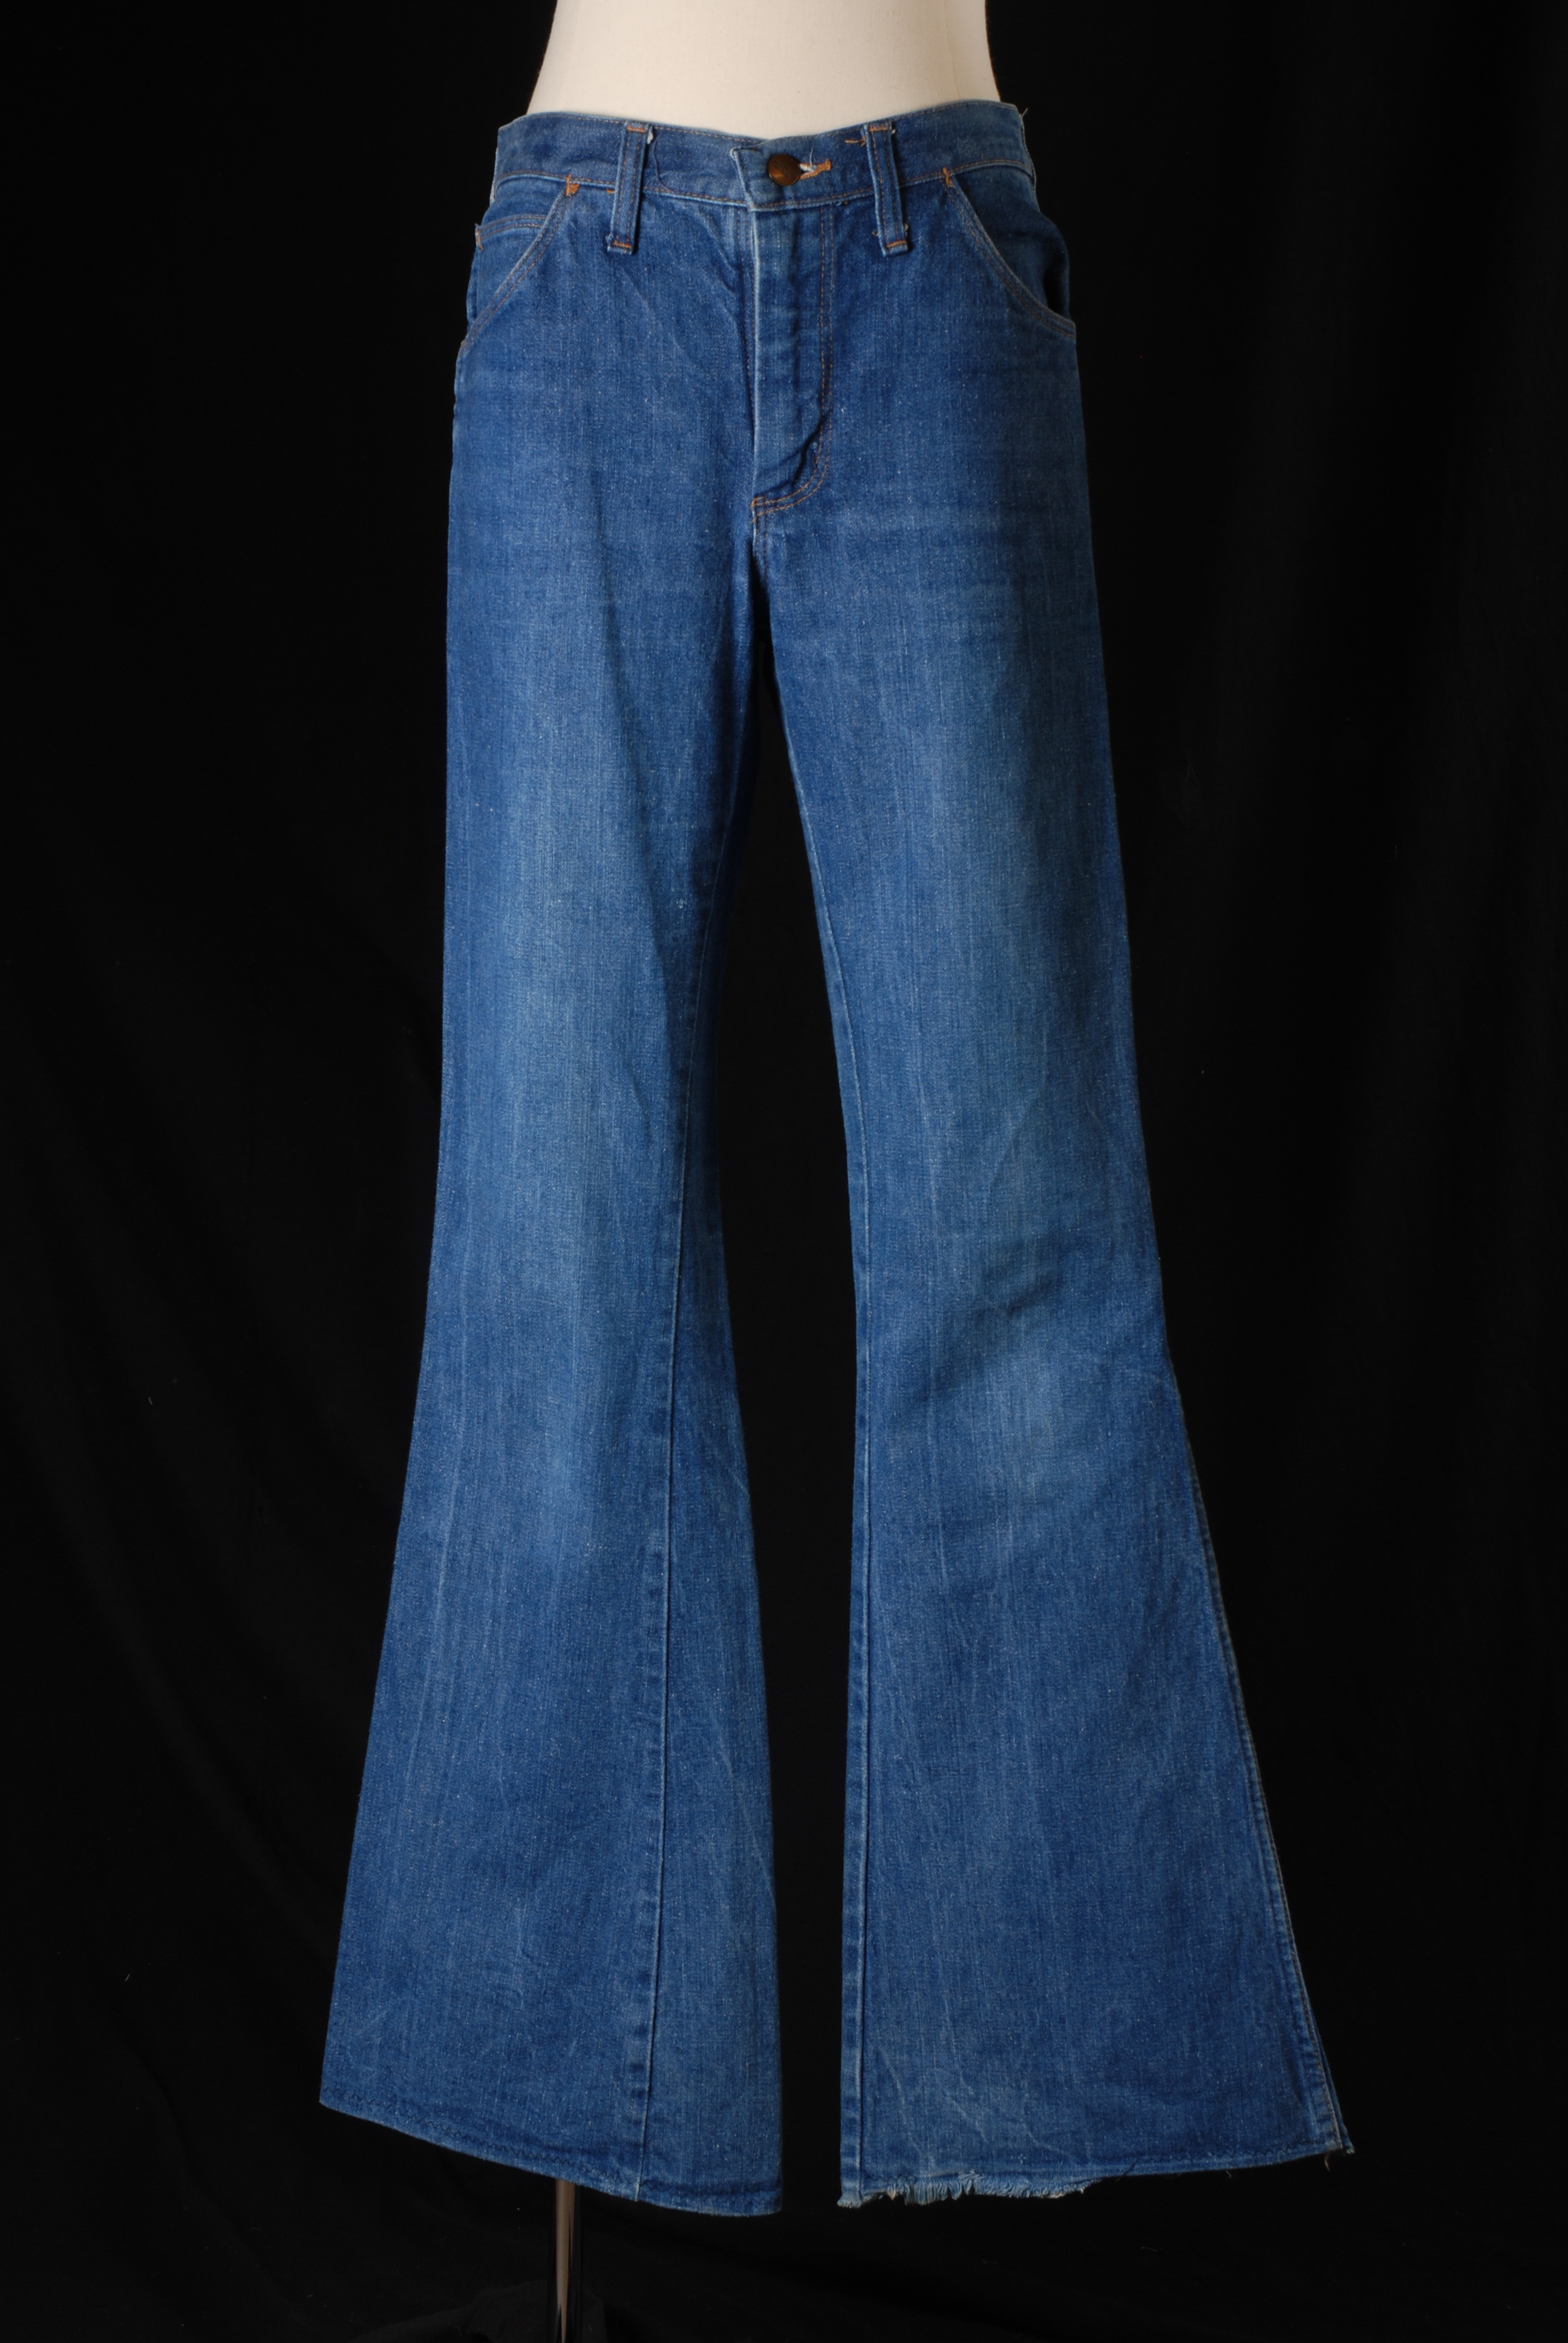 File:Spijkerbroek van blauw katoenen denim met wijd uitlopende pijpen,  “Wrangler”, objectnr 25676.JPG - Wikipedia